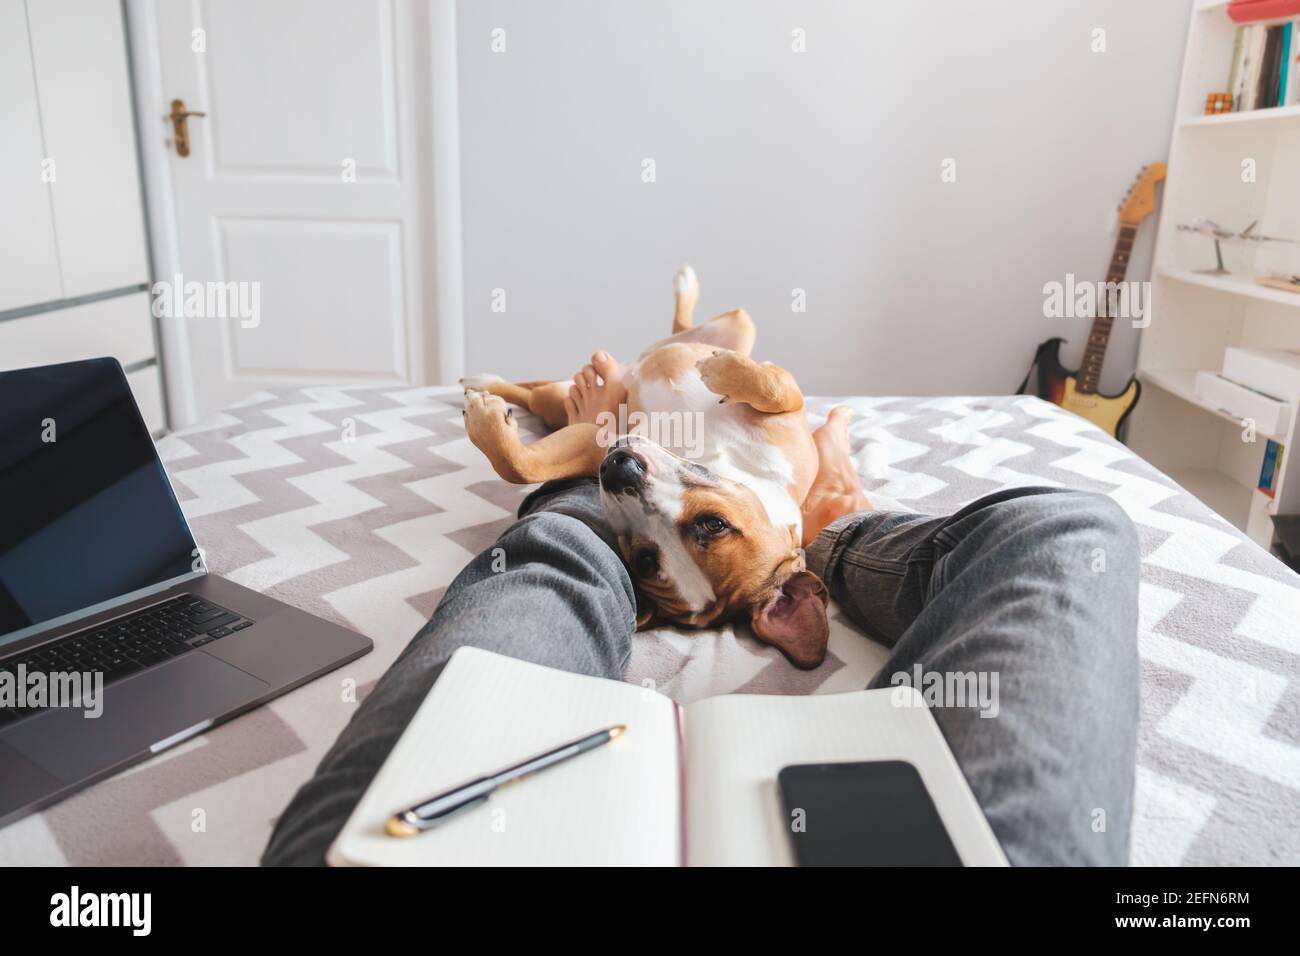 Arbeiten von zu Hause aus, häusliches Leben mit einem Haustier. Der Hund liegt im Bett mit den Füßen des Menschen im Schlafzimmer Stockfoto